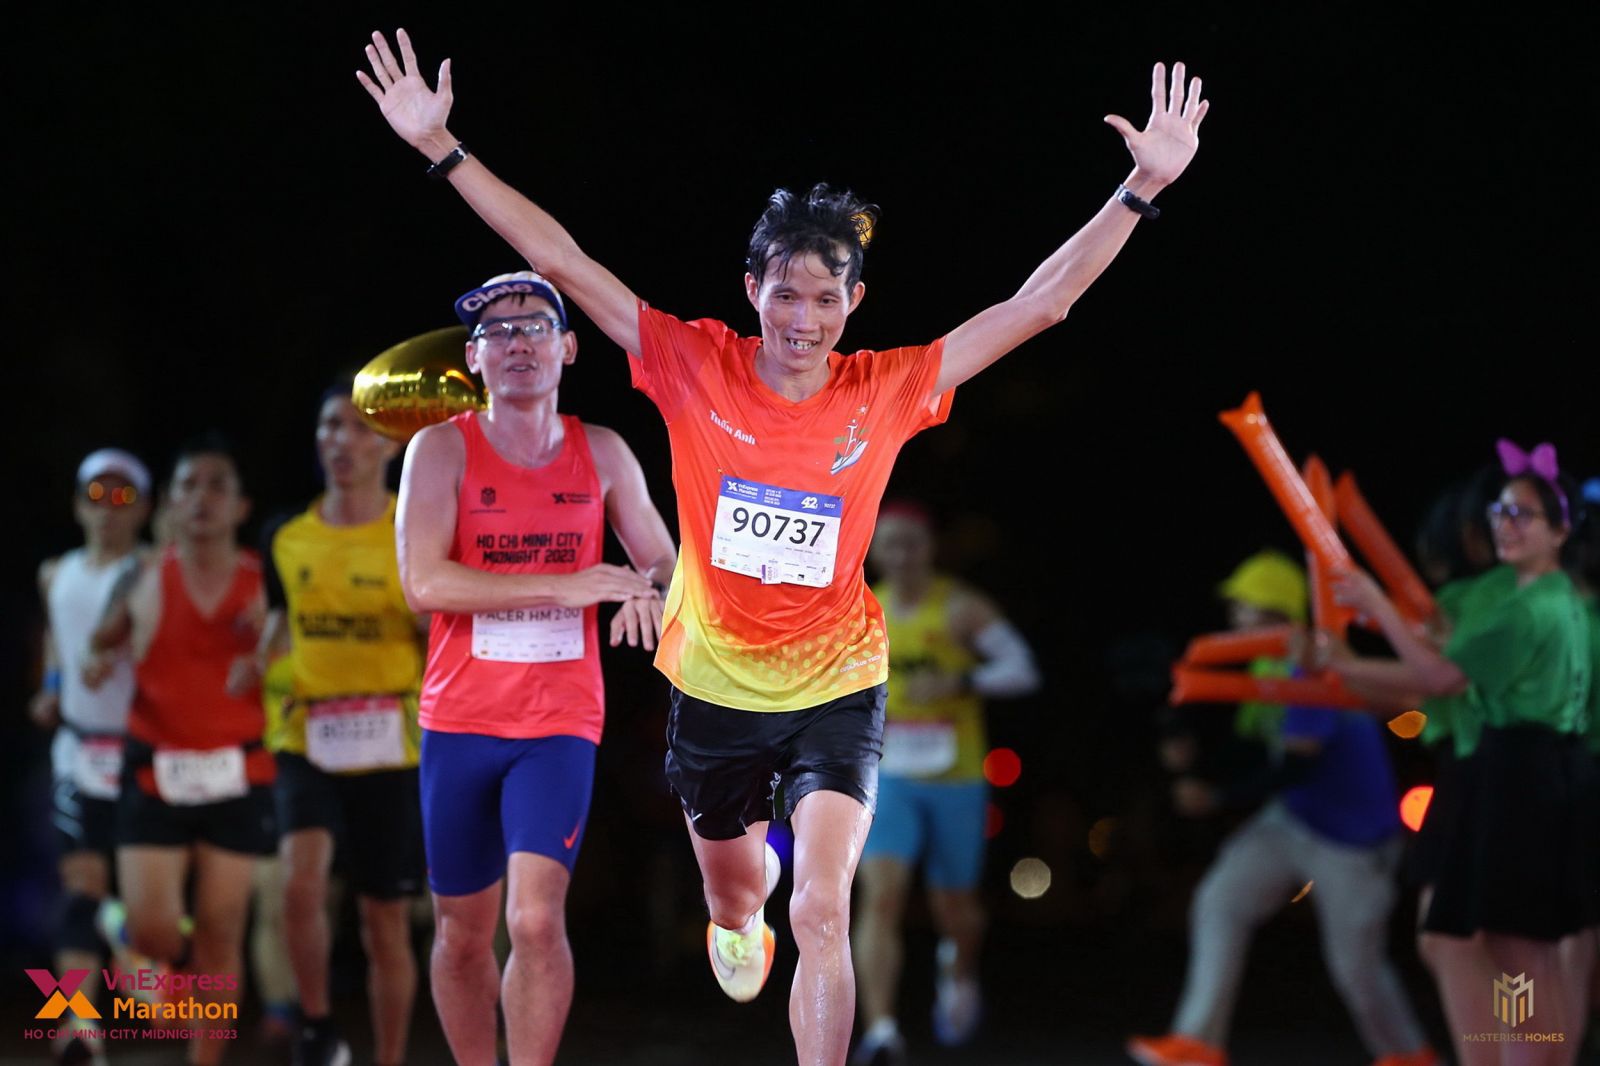 Mỗi lần tham gia chạy là một lần anh Trần Văn Thuật được thỏa mãn đam mê, tận hưởng cuộc sống một cách trọn vẹn nhất.